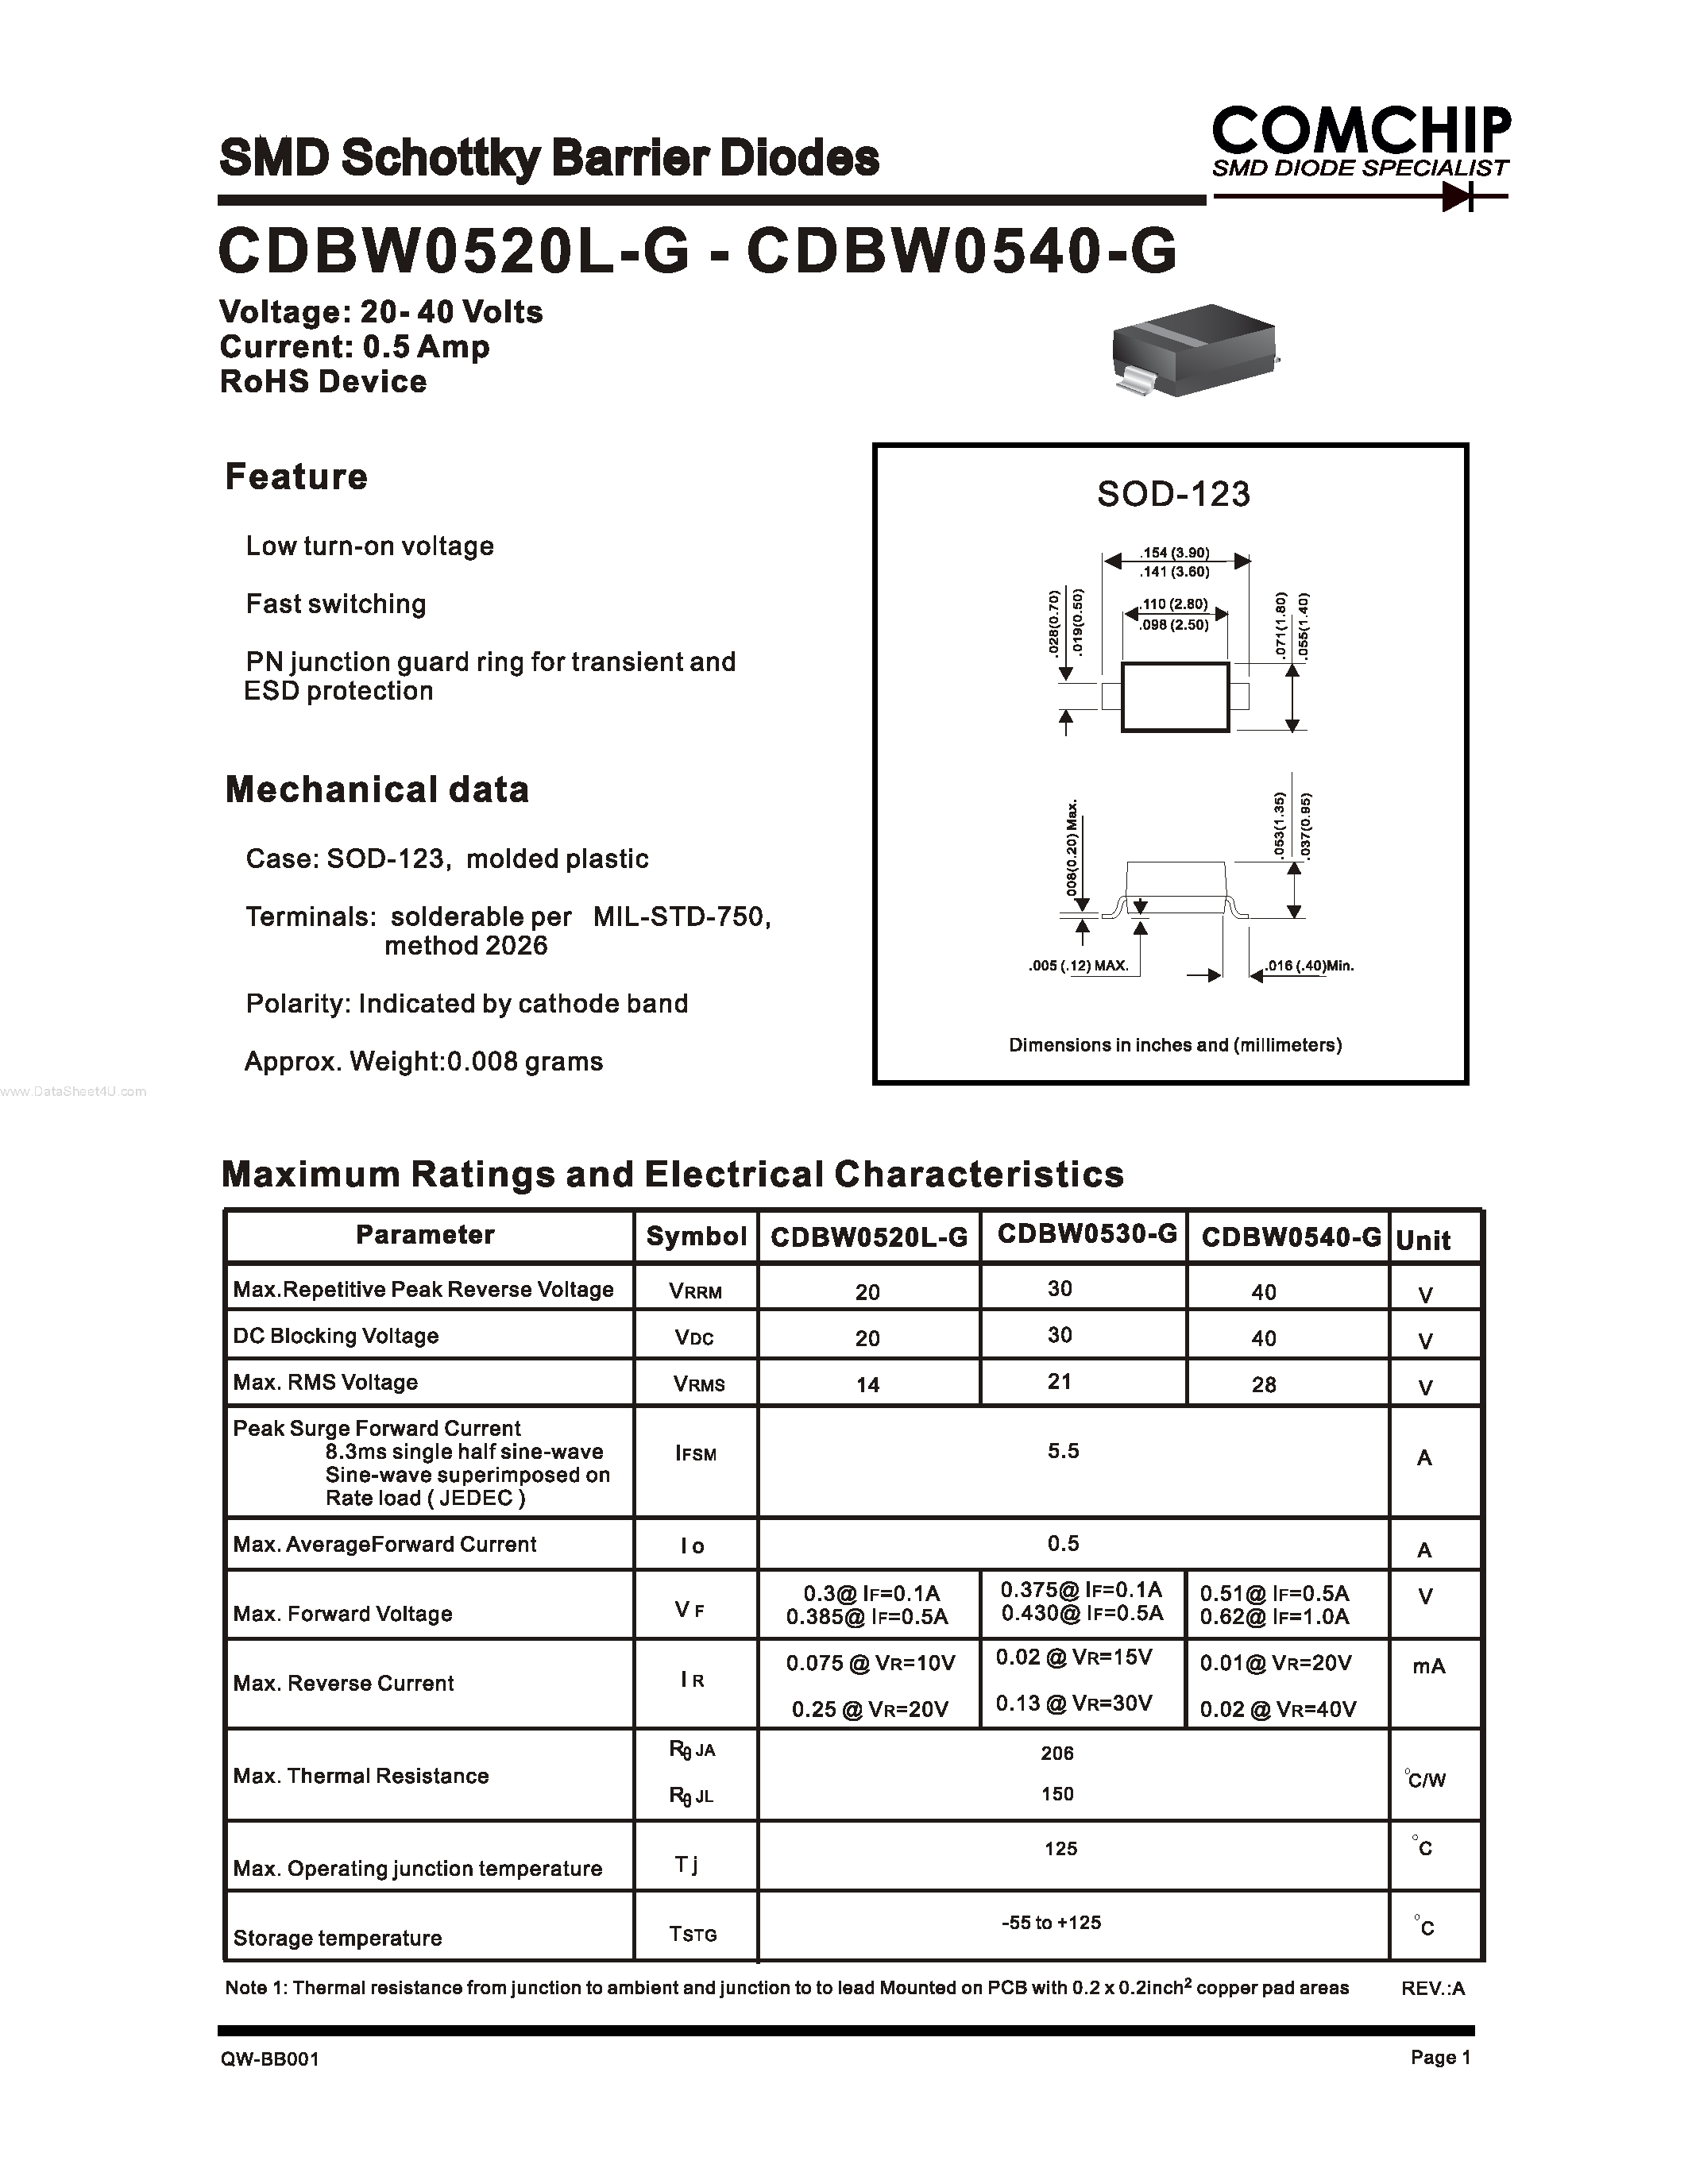 Datasheet CDBW0520L-G - (CDBW0520L-G - CDBW0540L-G) SMD Schottky Barrier Diodes page 1